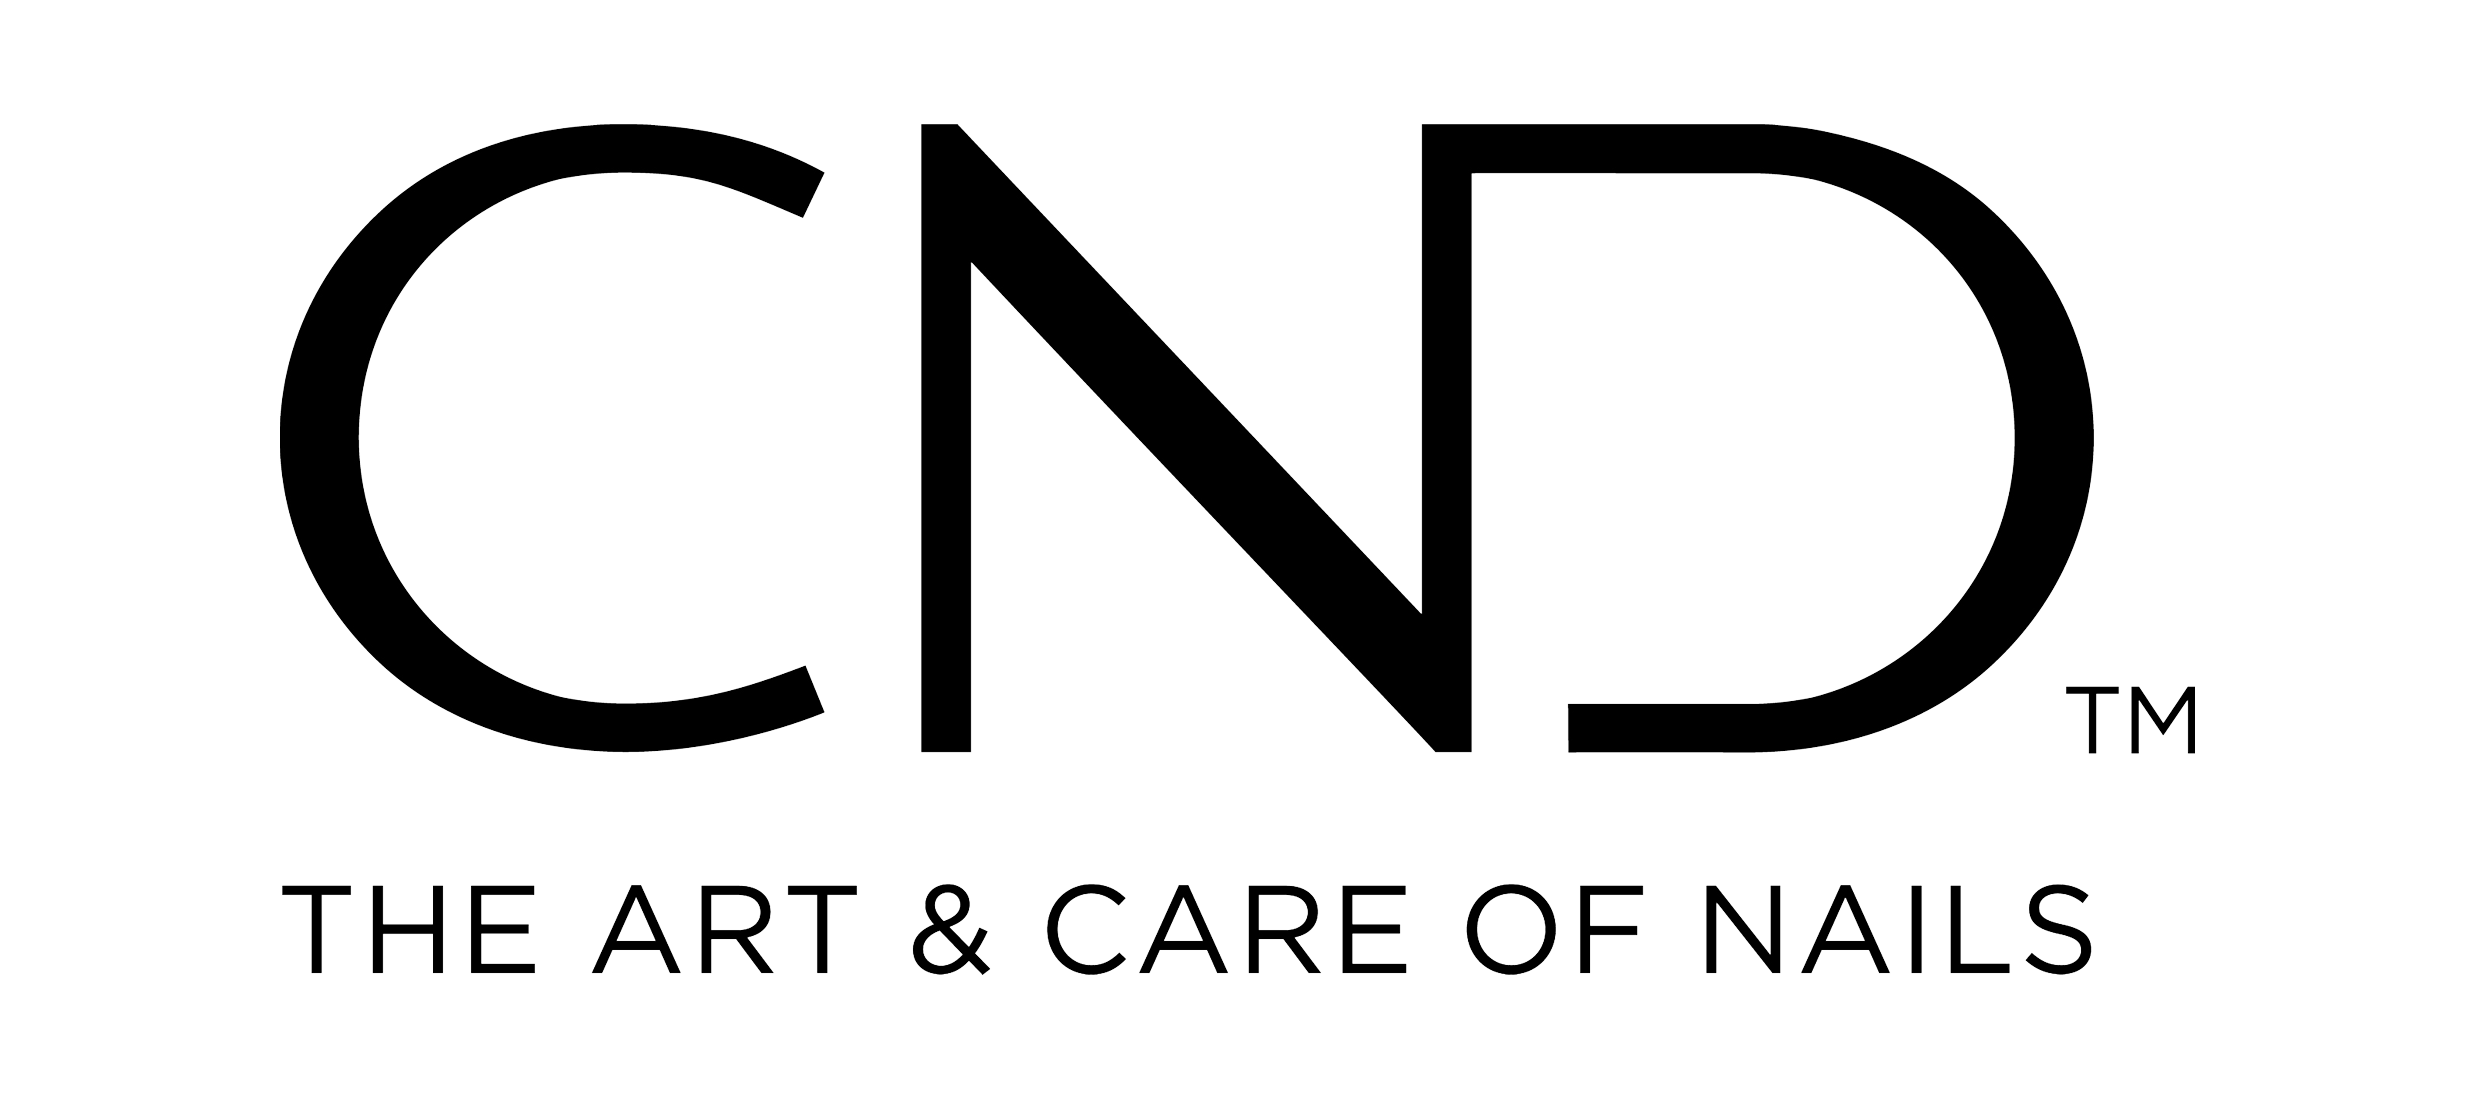 CND (Creative Nail Design) Logo